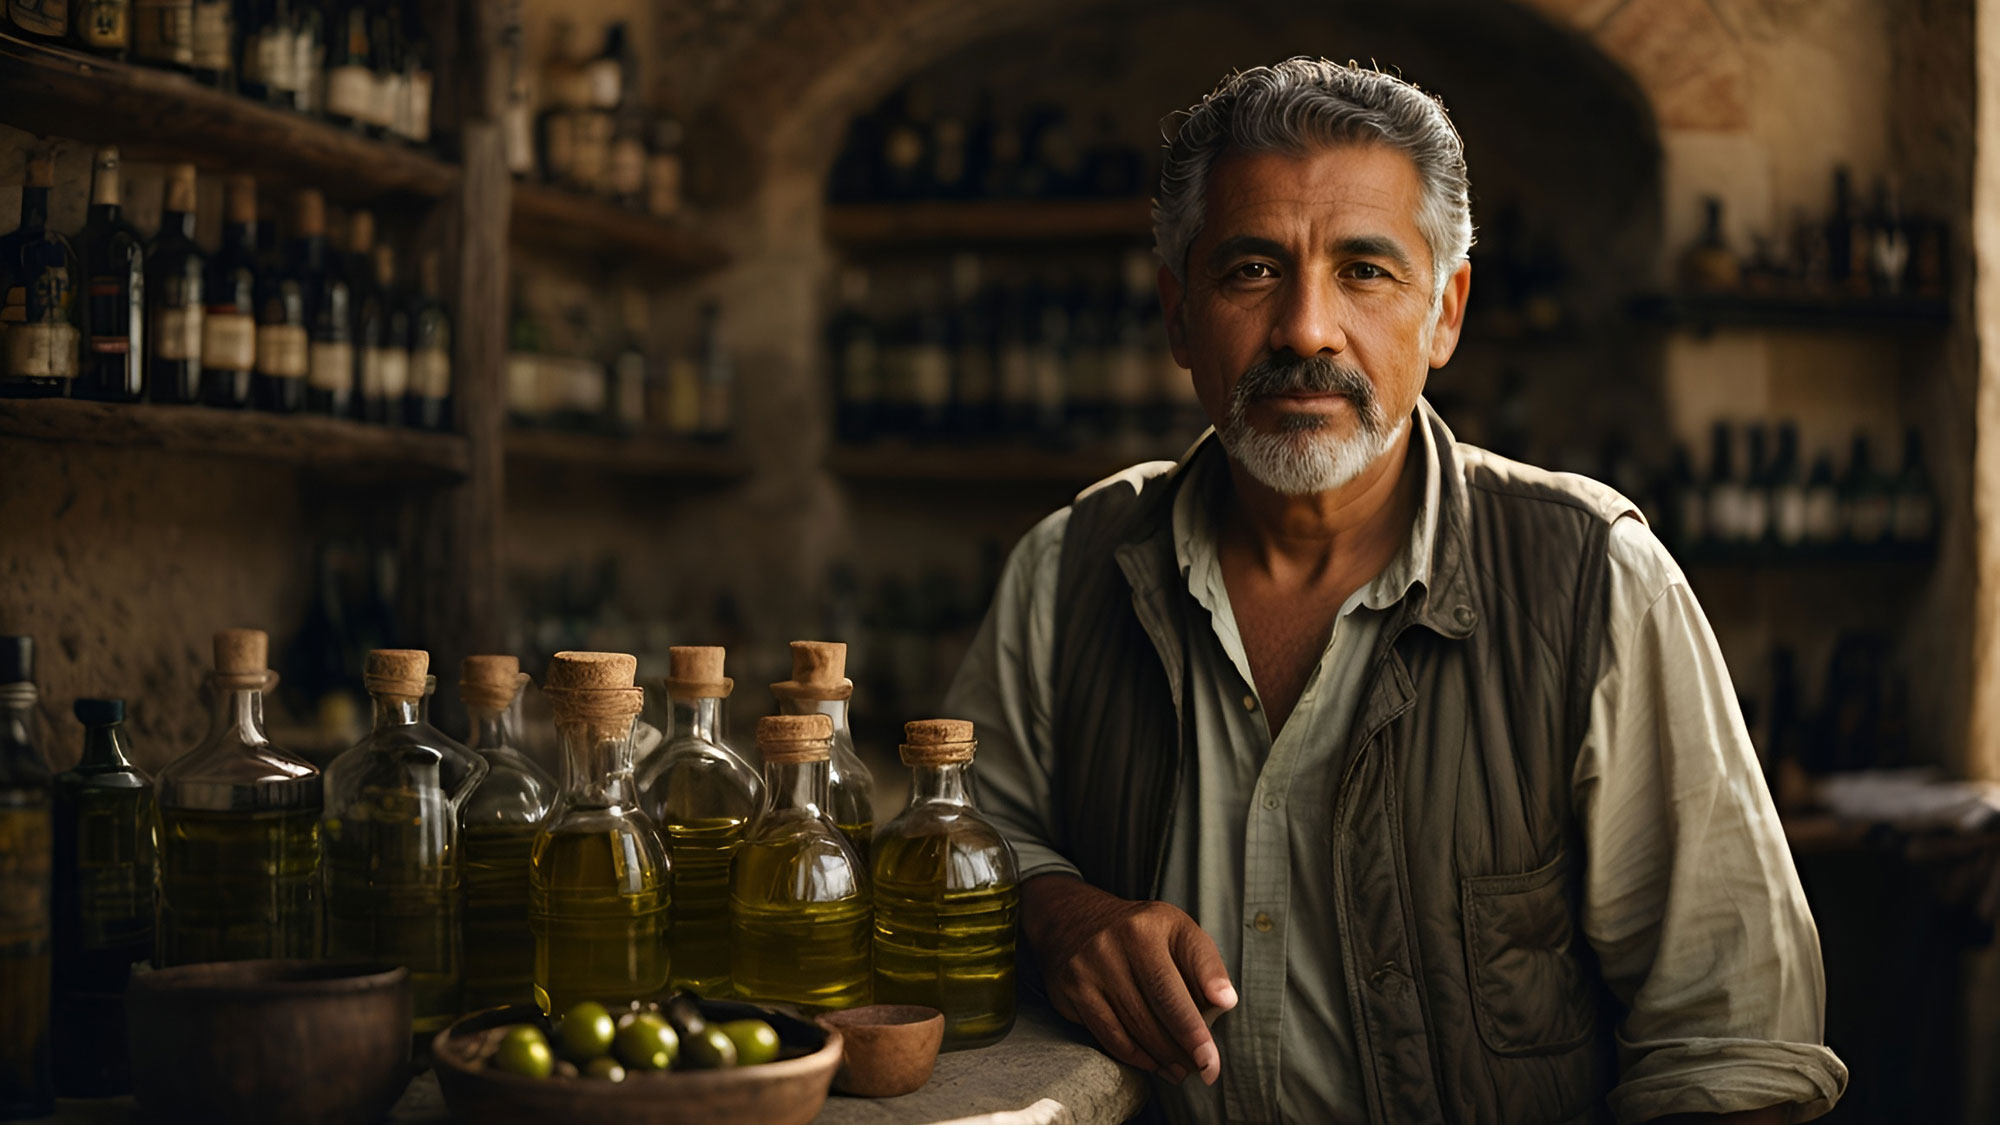 Unsere hochwertigen Olivenöle werden von Händlern angeboten, die ihrerseits Wert auf Nachhaltigkeit und Qualität legen. Genießen Sie mit unseren Olivenölen das Beste aus der mediterranen Küche.